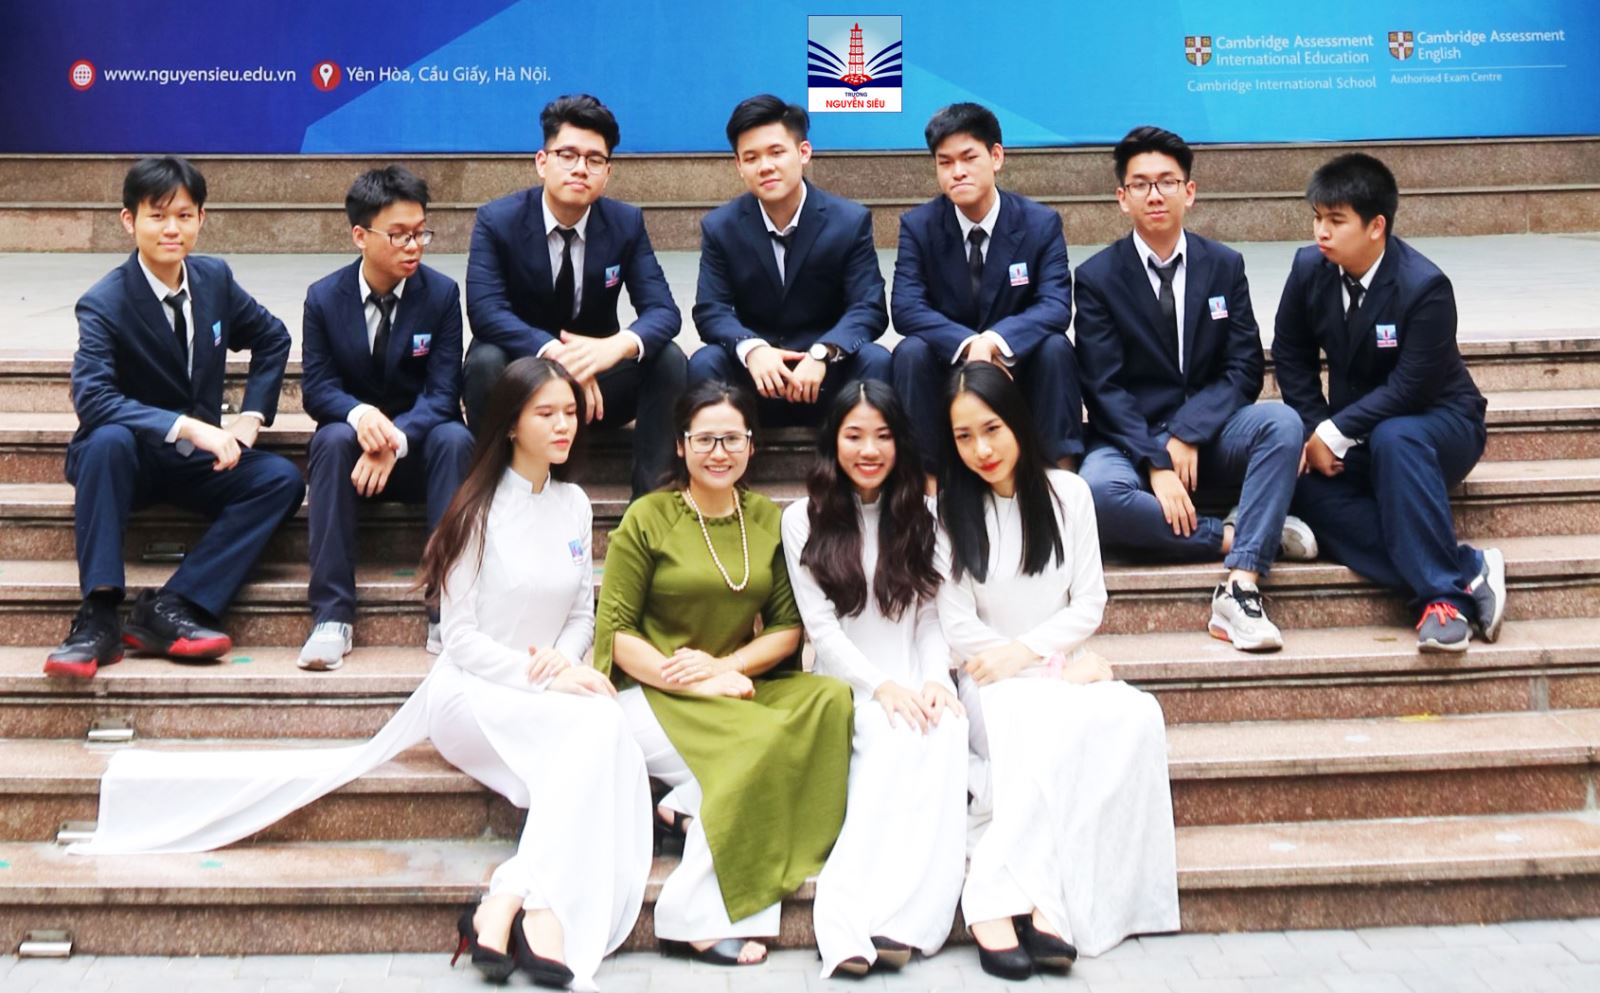 Học sinh lớp A-levels đầu tiên của Nguyễn Siêu đạt 5 điểm A*